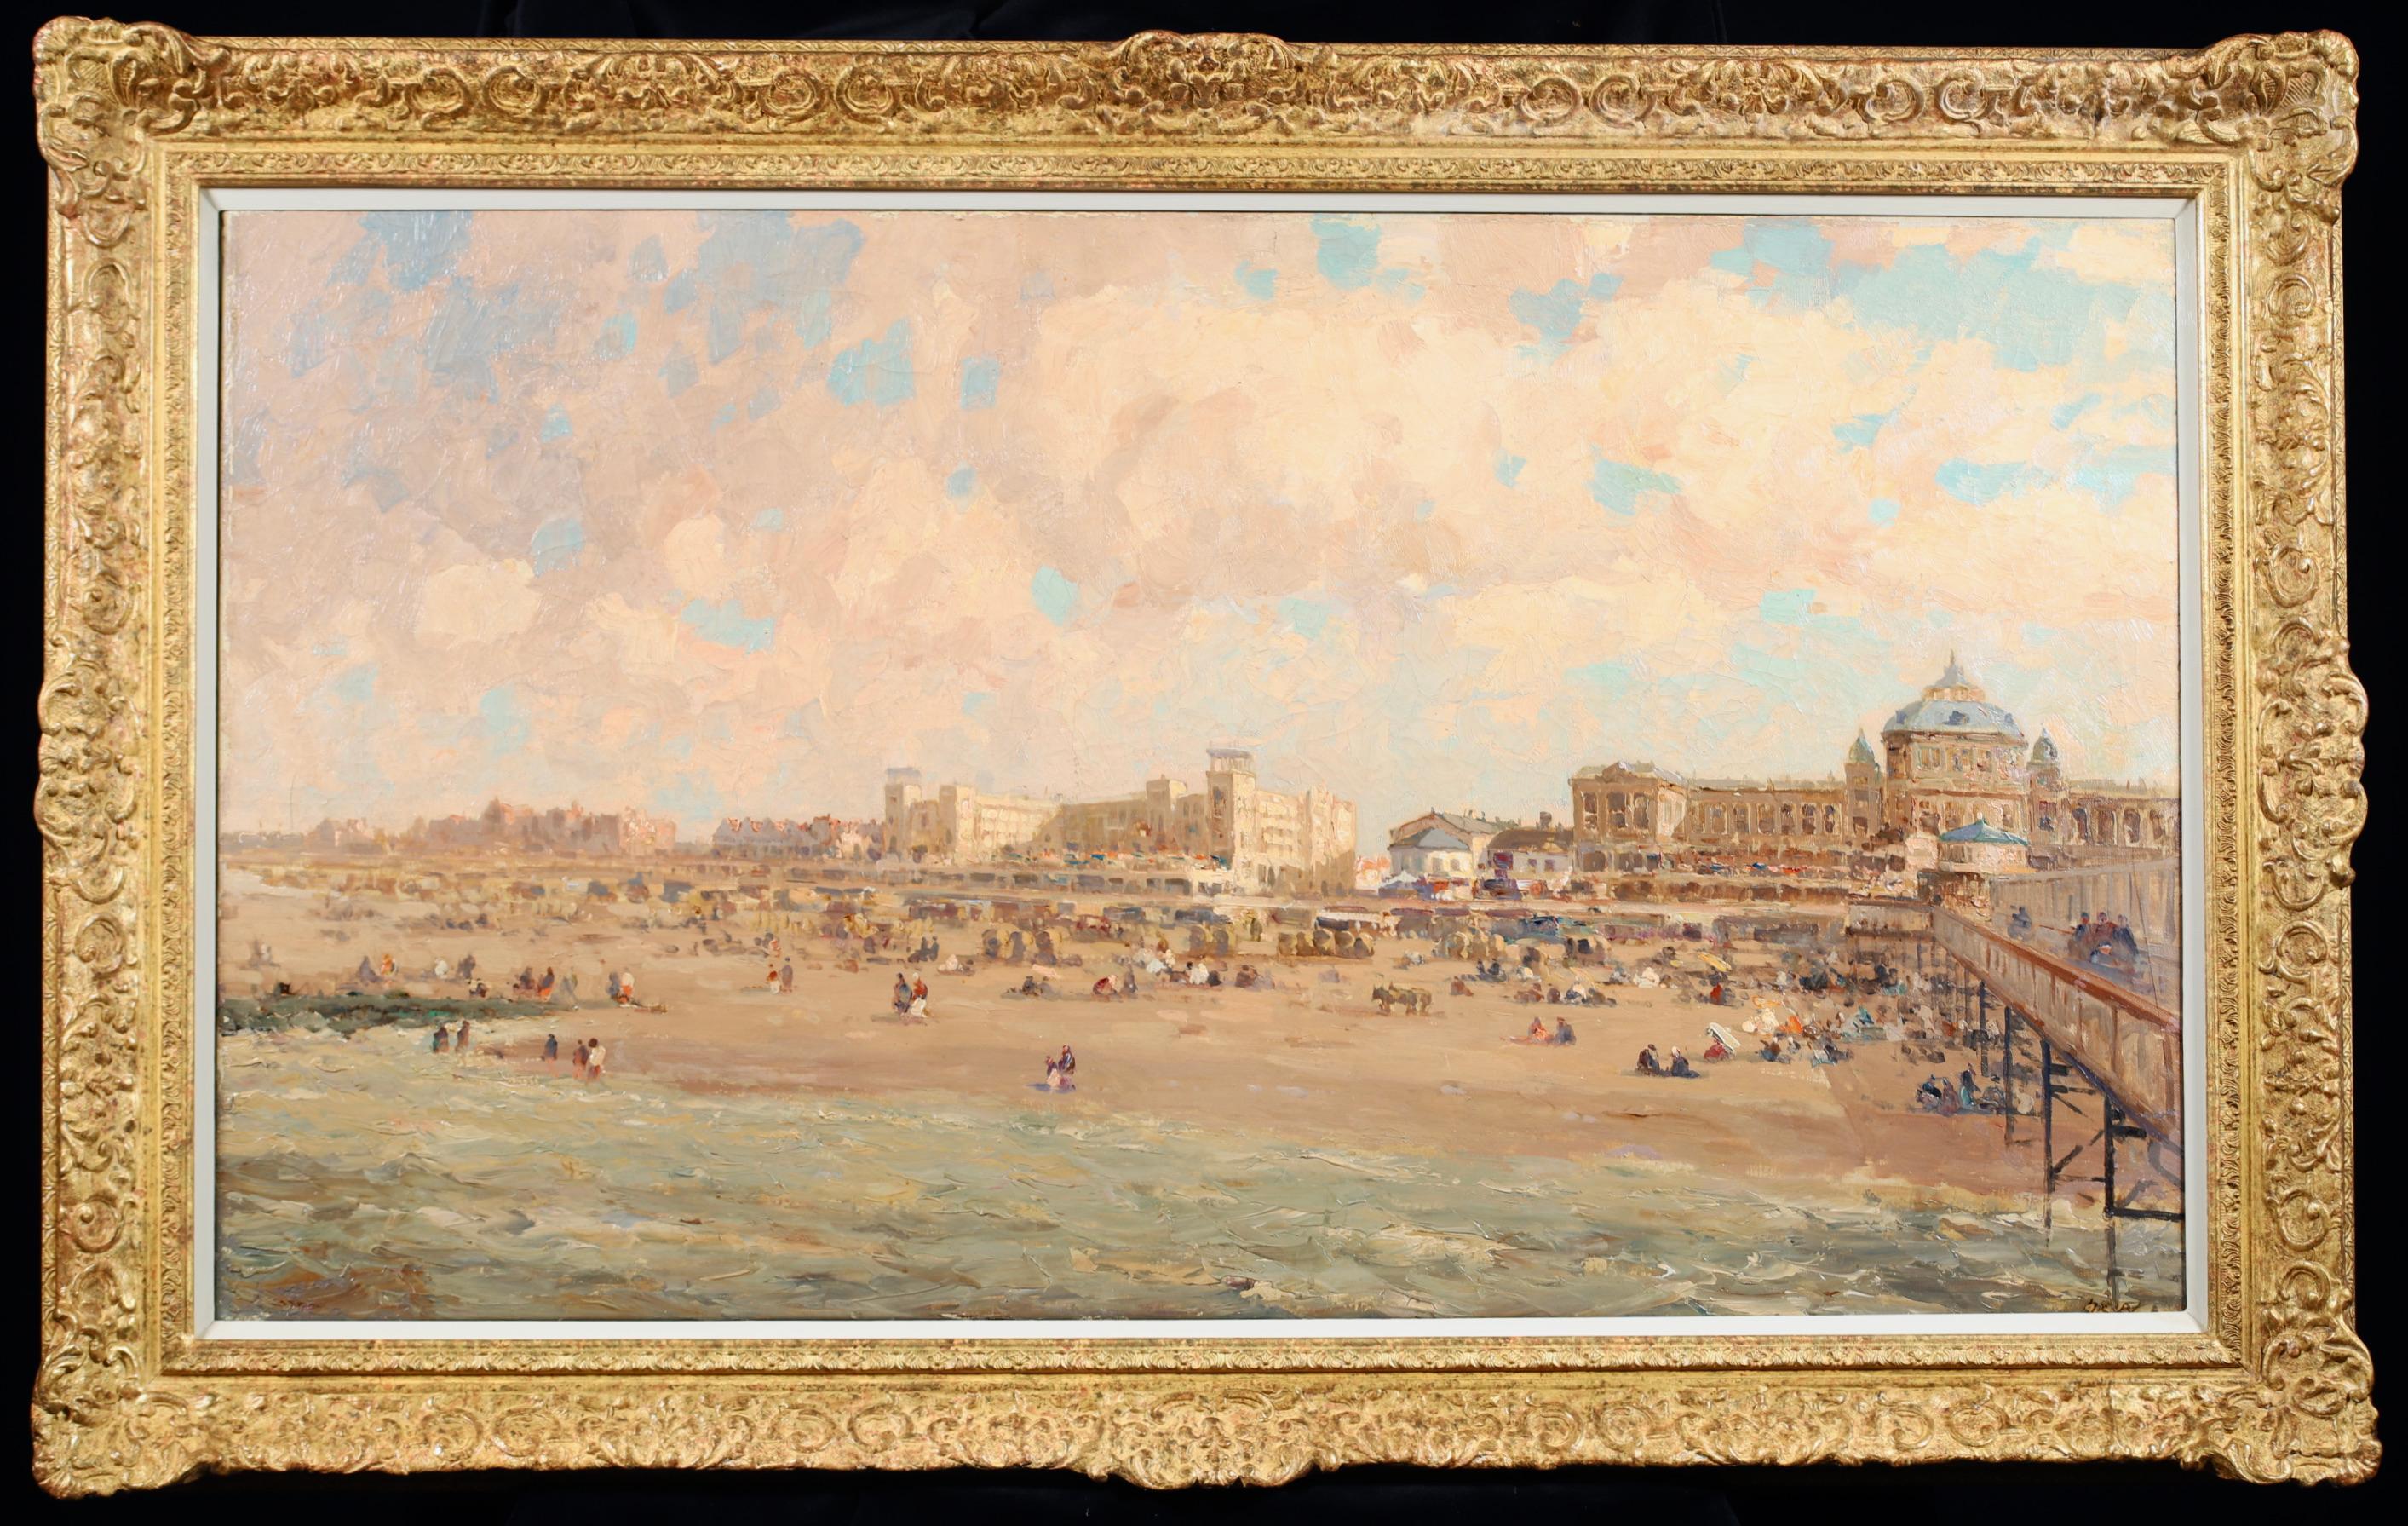 Bathers on the Beach – Postimpressionistische Landschaft von Jacques-Emile Blanche